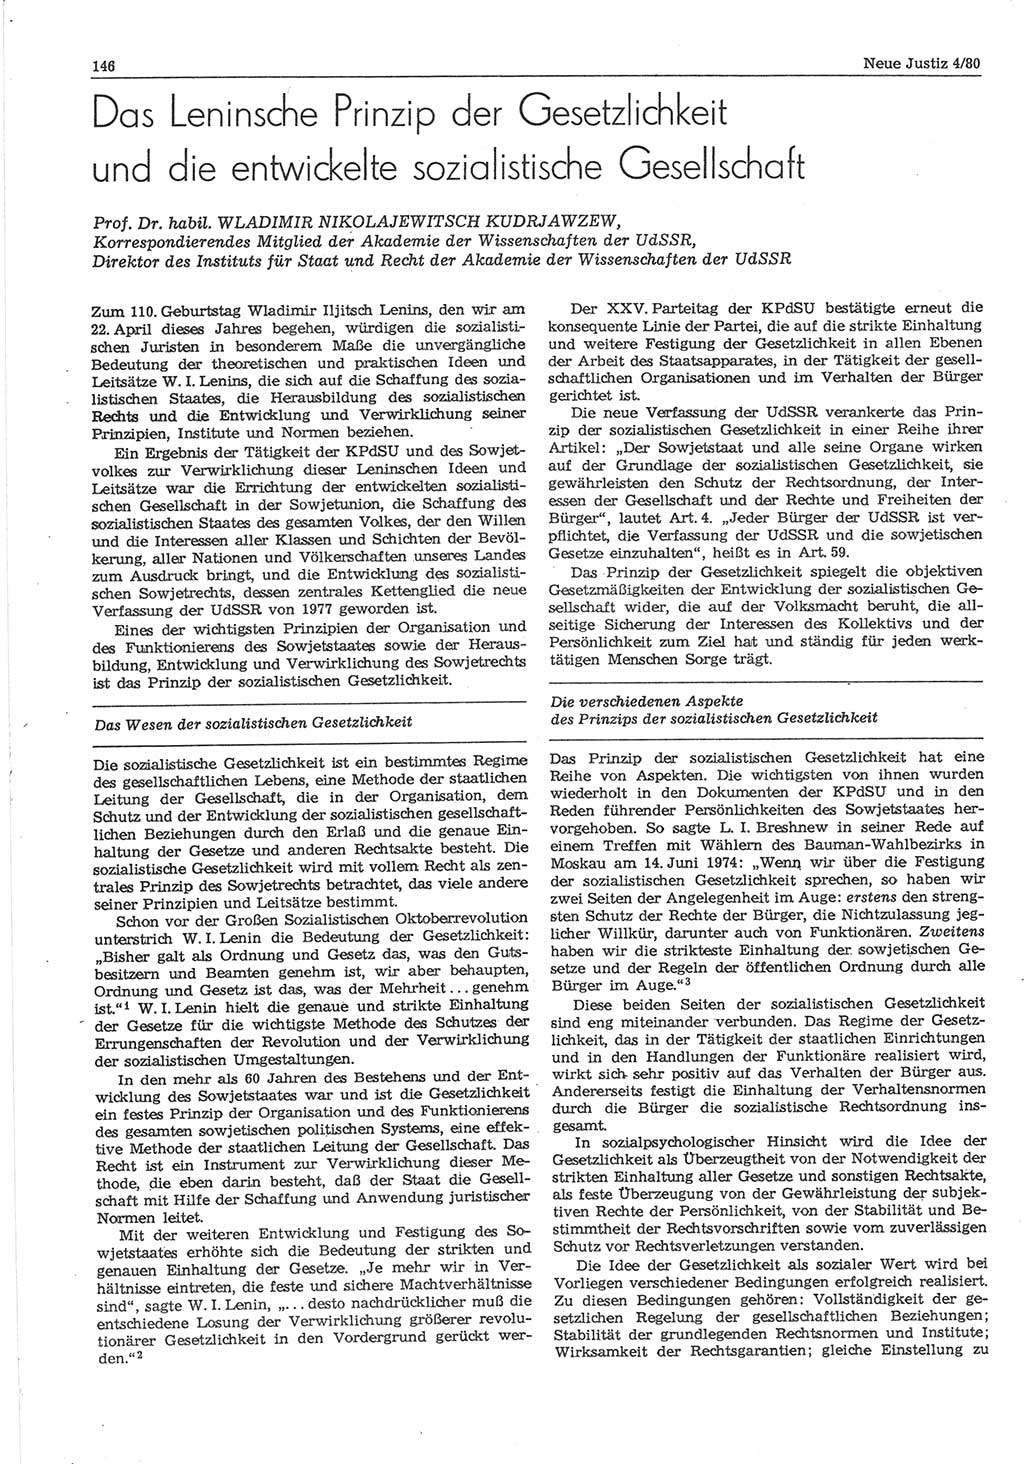 Neue Justiz (NJ), Zeitschrift für sozialistisches Recht und Gesetzlichkeit [Deutsche Demokratische Republik (DDR)], 34. Jahrgang 1980, Seite 146 (NJ DDR 1980, S. 146)